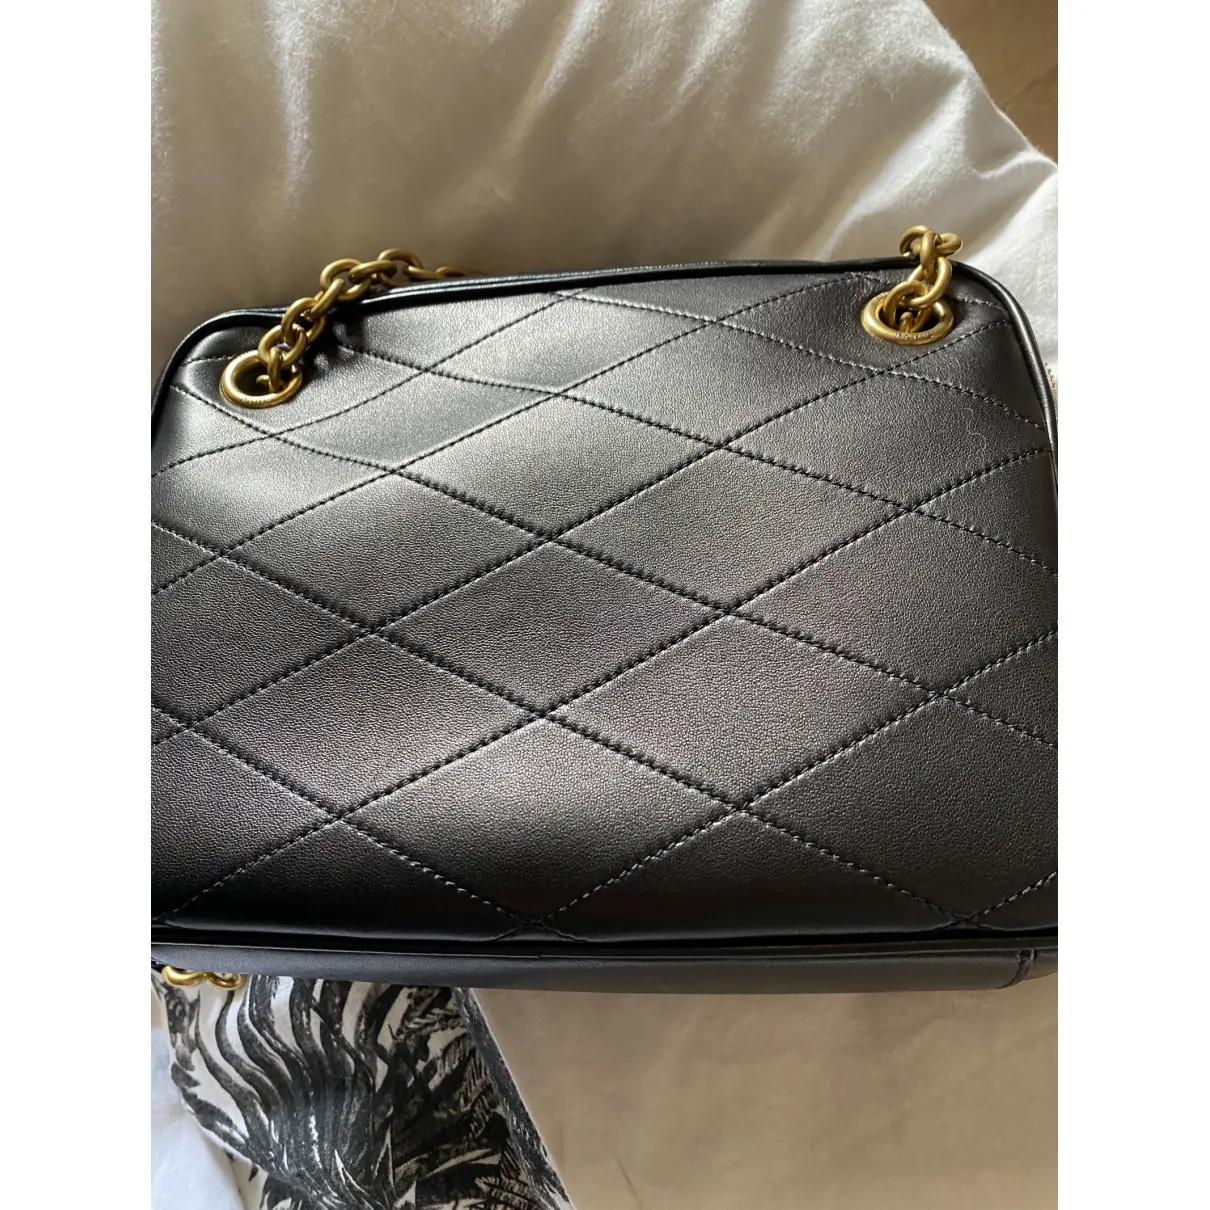 Le Maillon leather handbag Saint Laurent